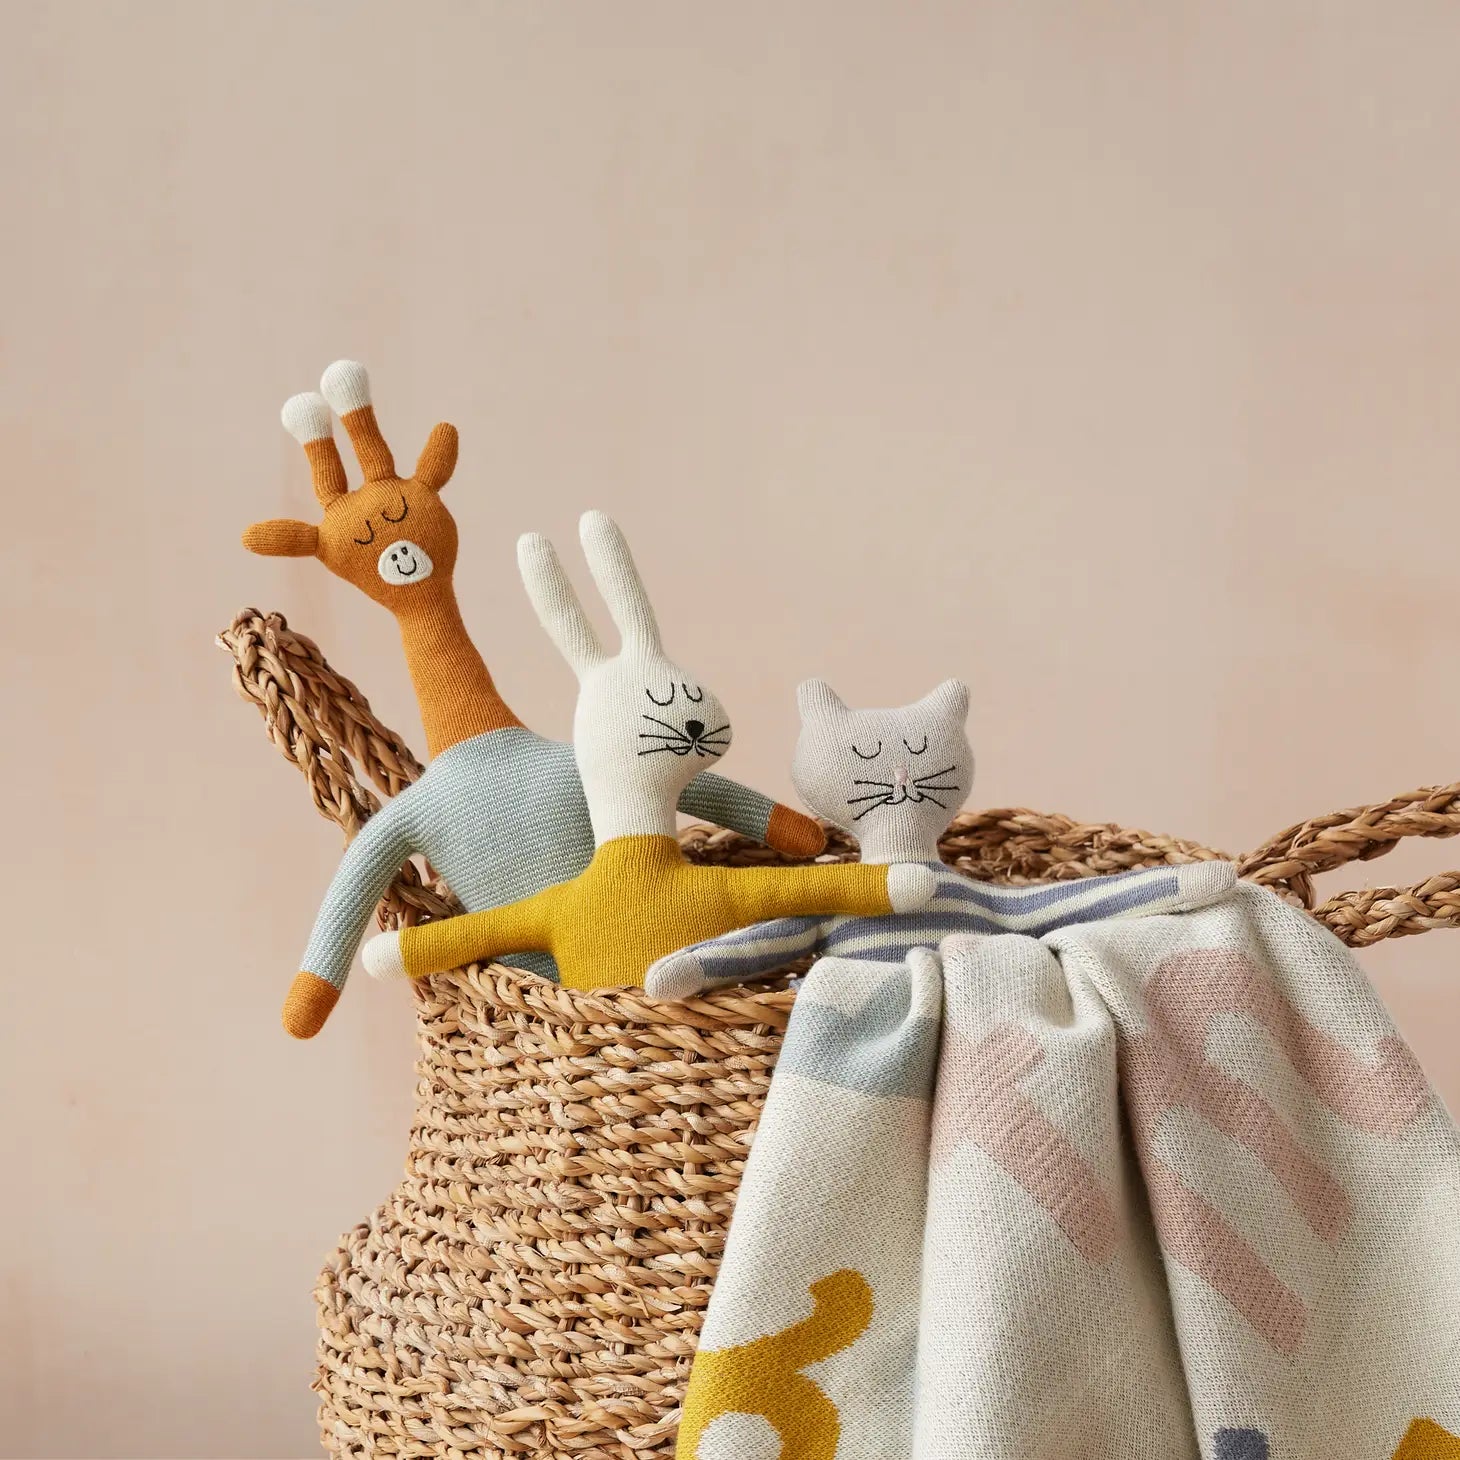 Cotton Knit Stuffed Animal Soft Toy - Aqua Giraffe - Muddy Boots Home UK